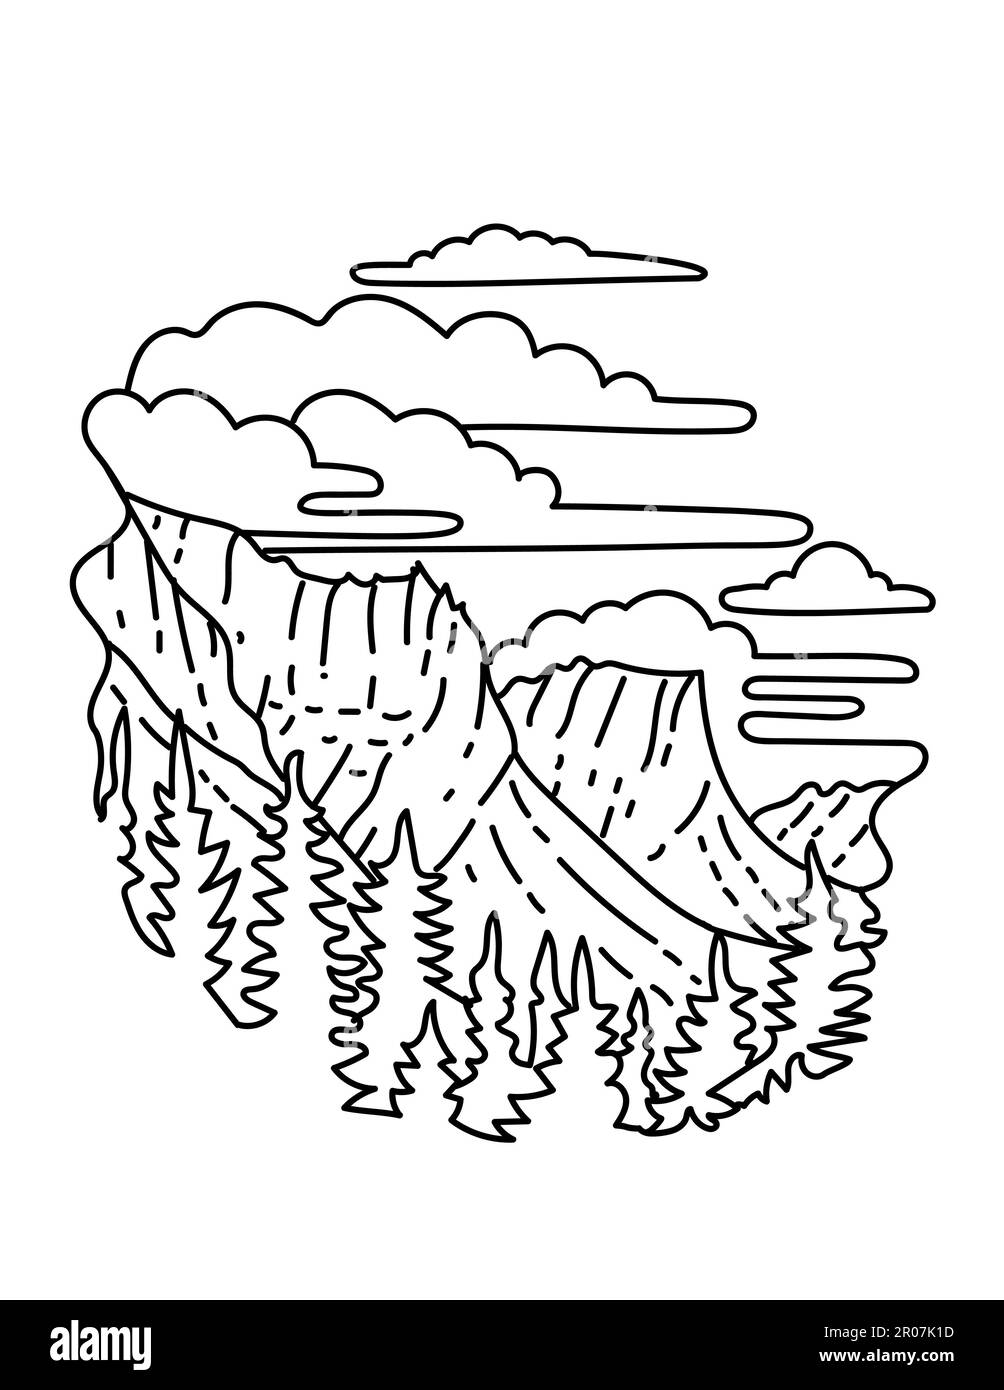 Illustrazione in linea singola del Glacier National Park nelle Montagne Rocciose in Montana, Stati Uniti fatta in stile di disegno in linea monolina. Foto Stock